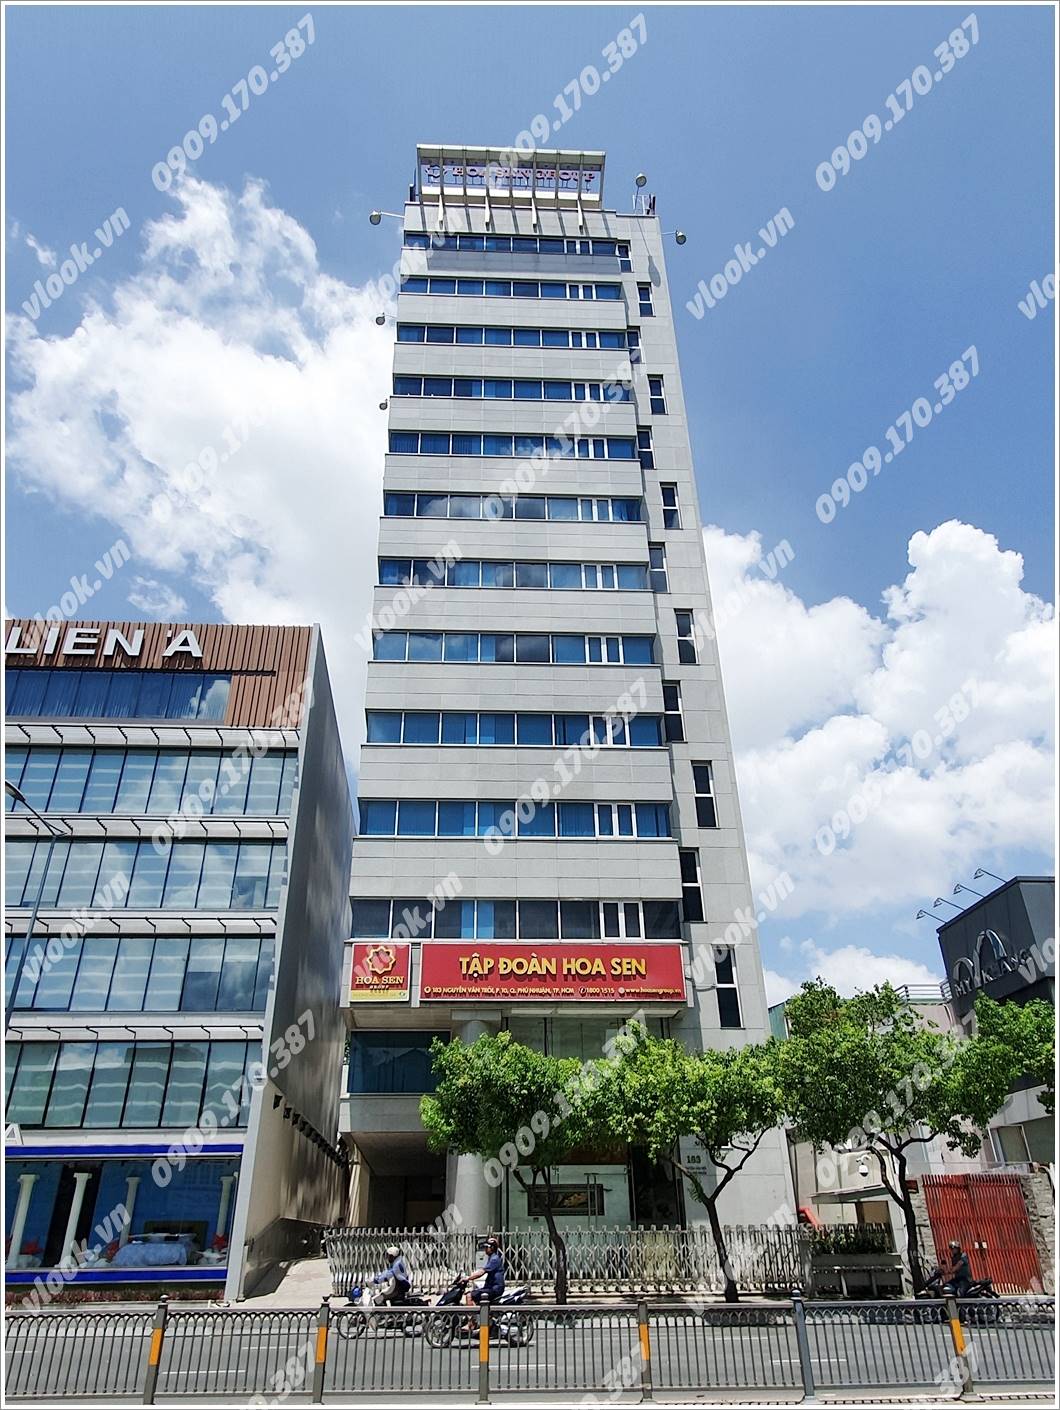 Cao ốc cho thuê văn phòng Sapphire Towẻ, Nguyễn Văn Trỗi, Quận Phú Nhuận, TPHCM - vlook.vn